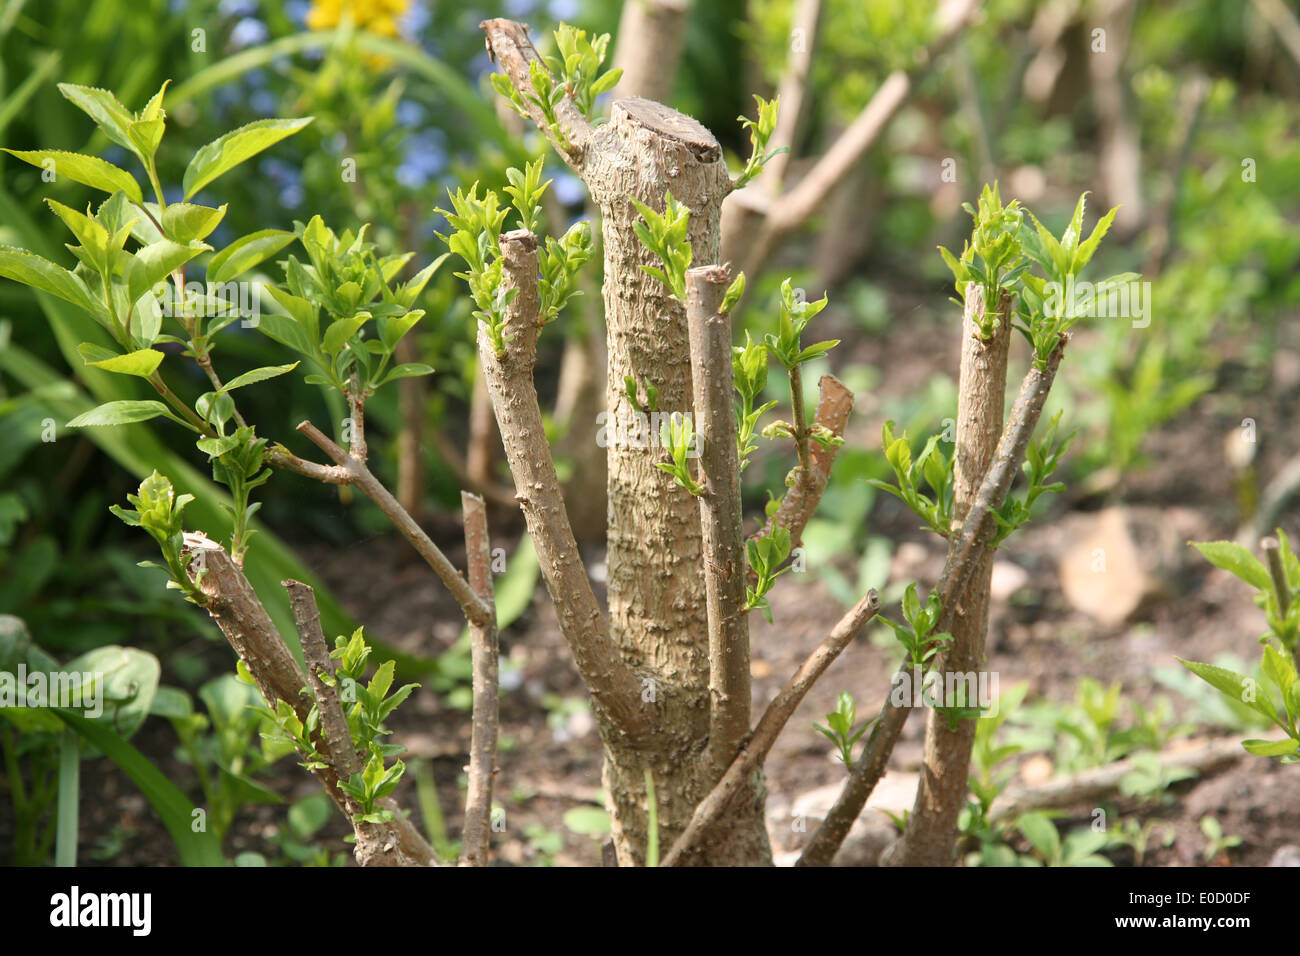 new shoots on a forsythia shrub Stock Photo